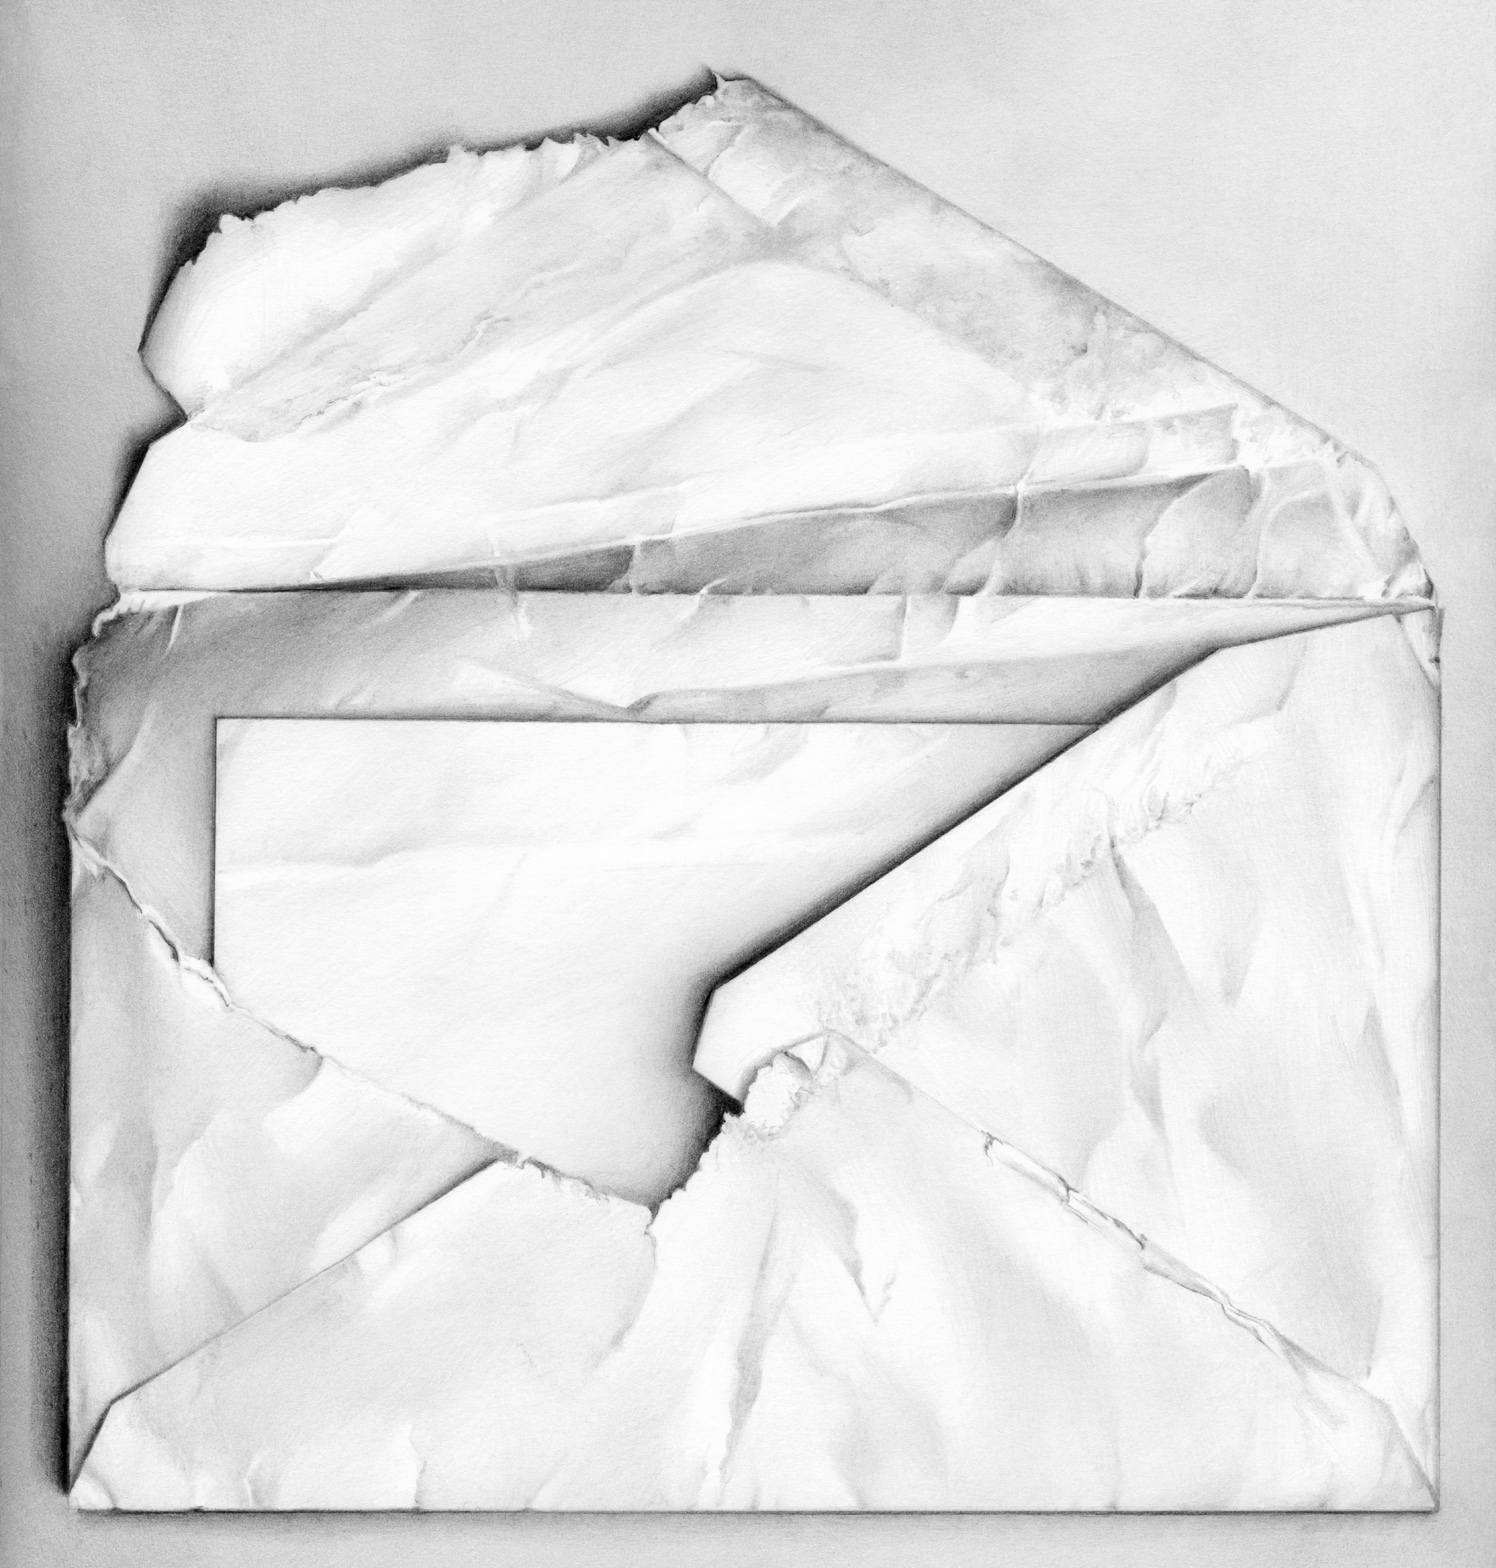 Envelope Revealing Folded Letter